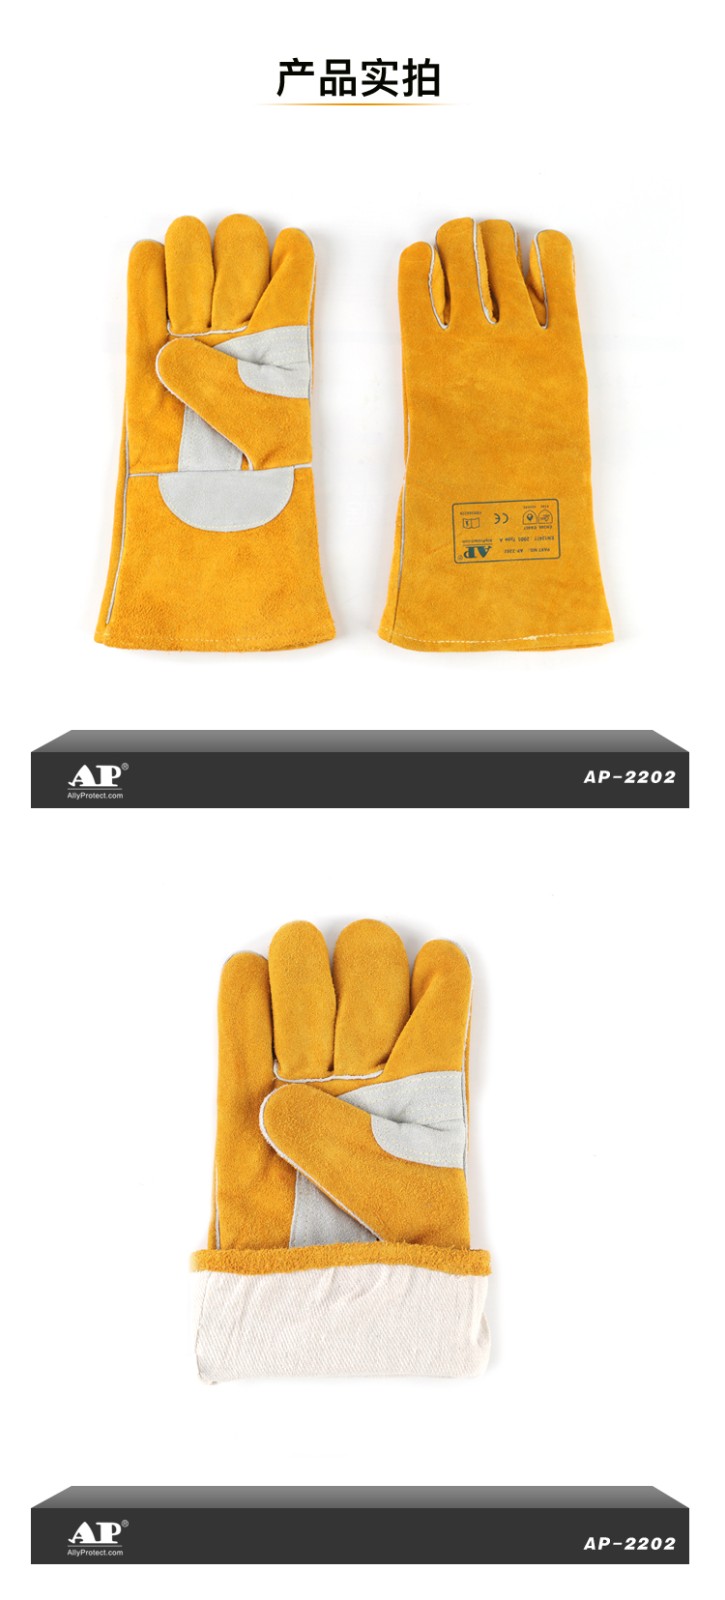 友盟AP-2202-XL 金黄色护掌烧焊手套